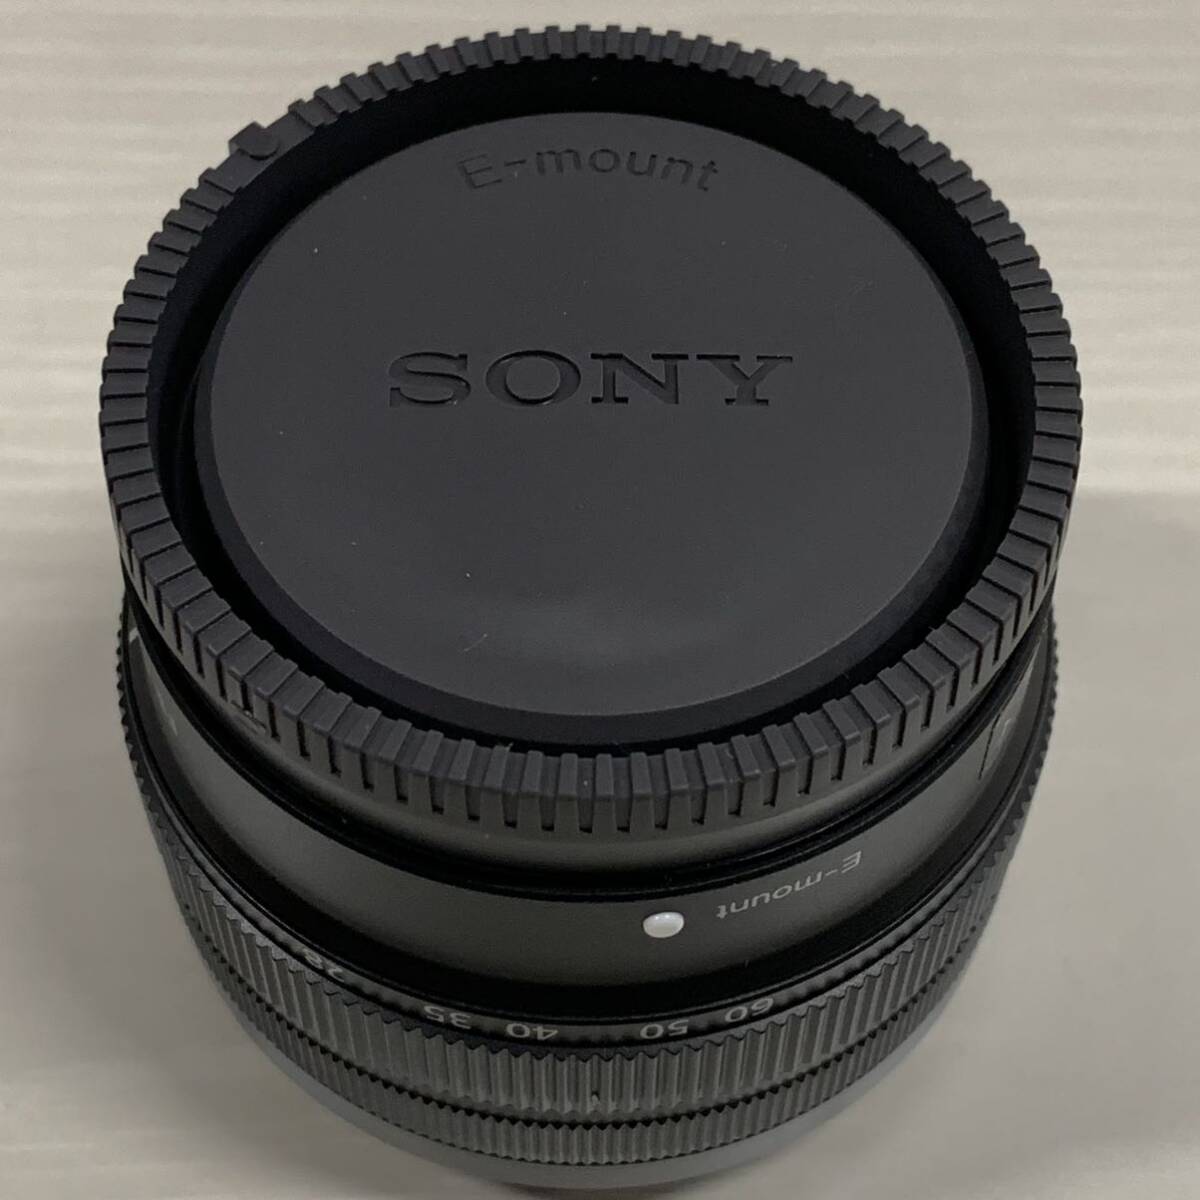 SONY ソニー フルサイズ ミラーレス一眼カメラ α7C ズームレンズキット(同梱レンズ:SEL2860) ブラック ILCE-7CL B デジタルカメラ の画像8